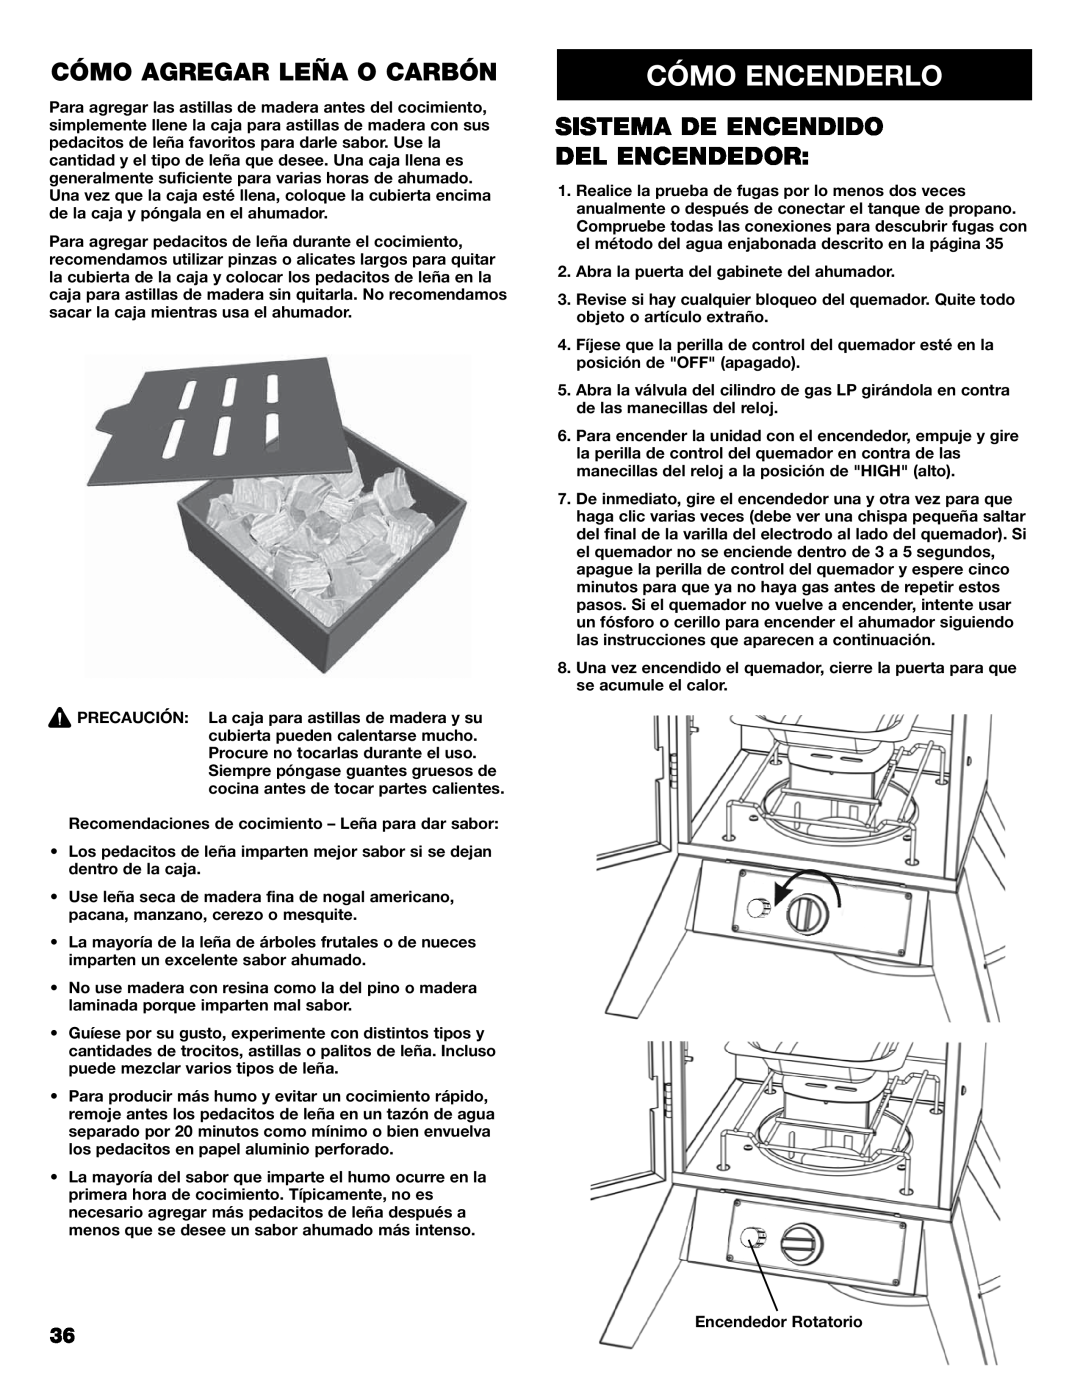 Kenmore 125.15884801 owner manual Cómo Encenderlo, Cómo Agregar Leña O Carbón, Sistema De Encendido Del Encendedor 